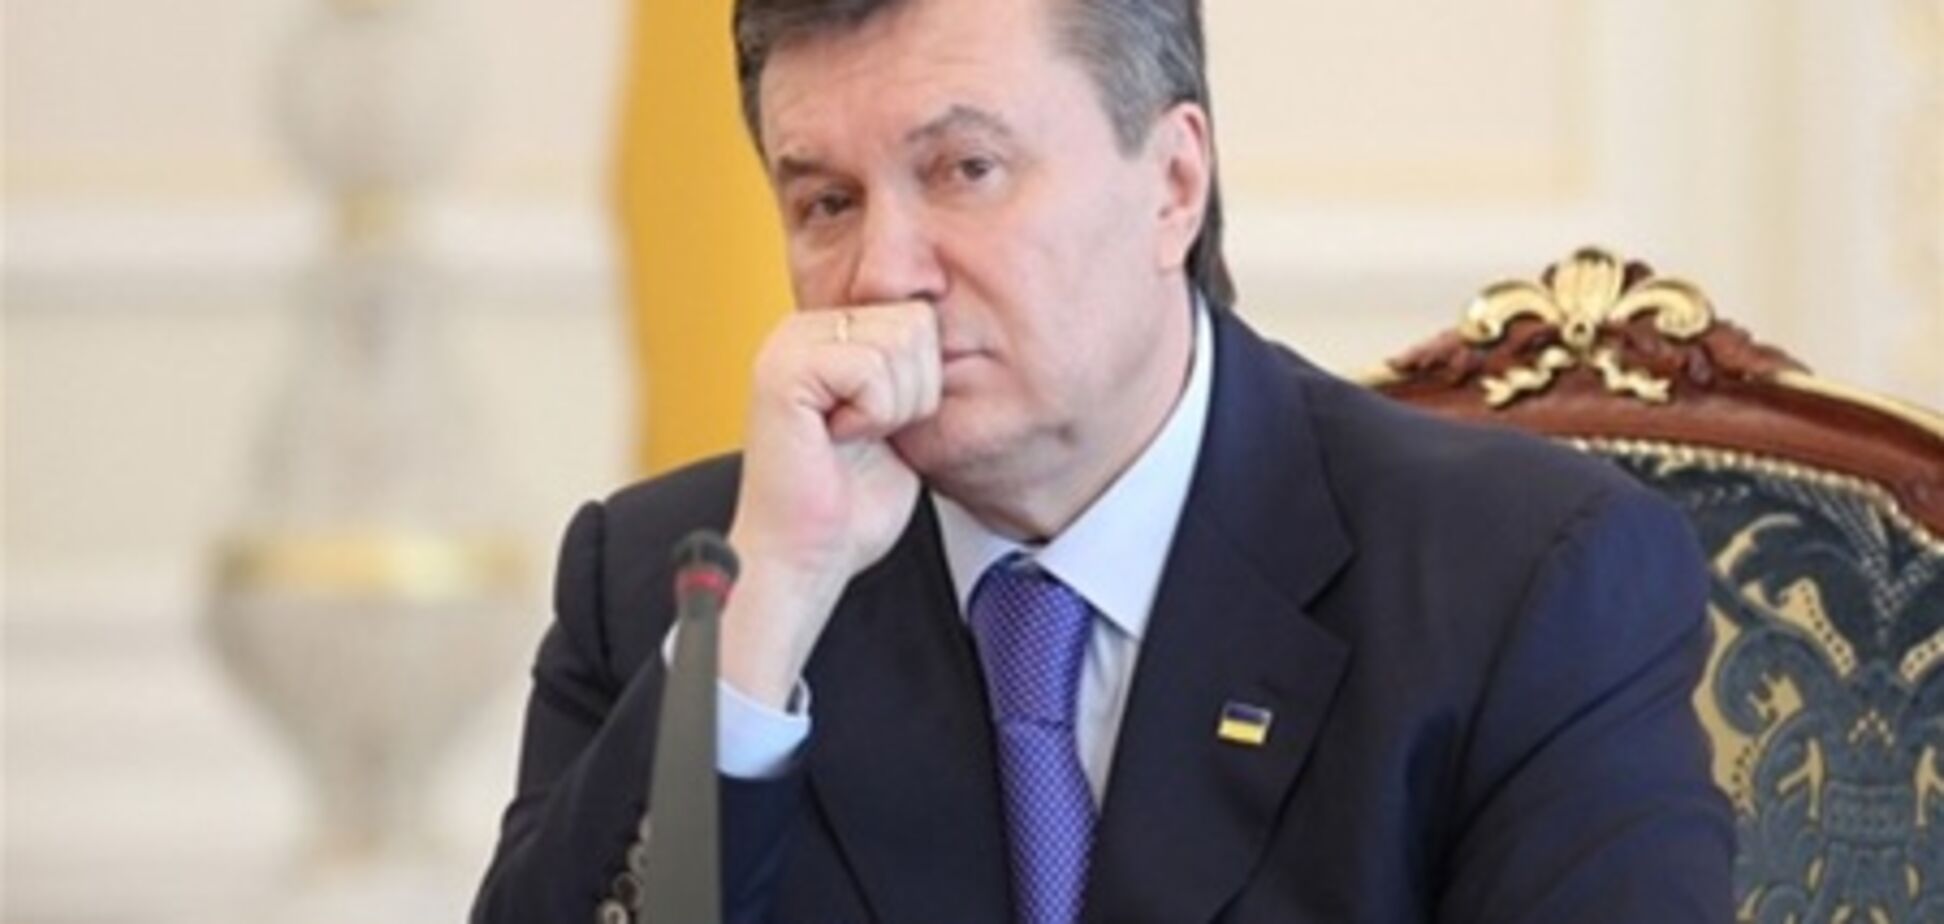 ПР: рейтинг Януковича виросте